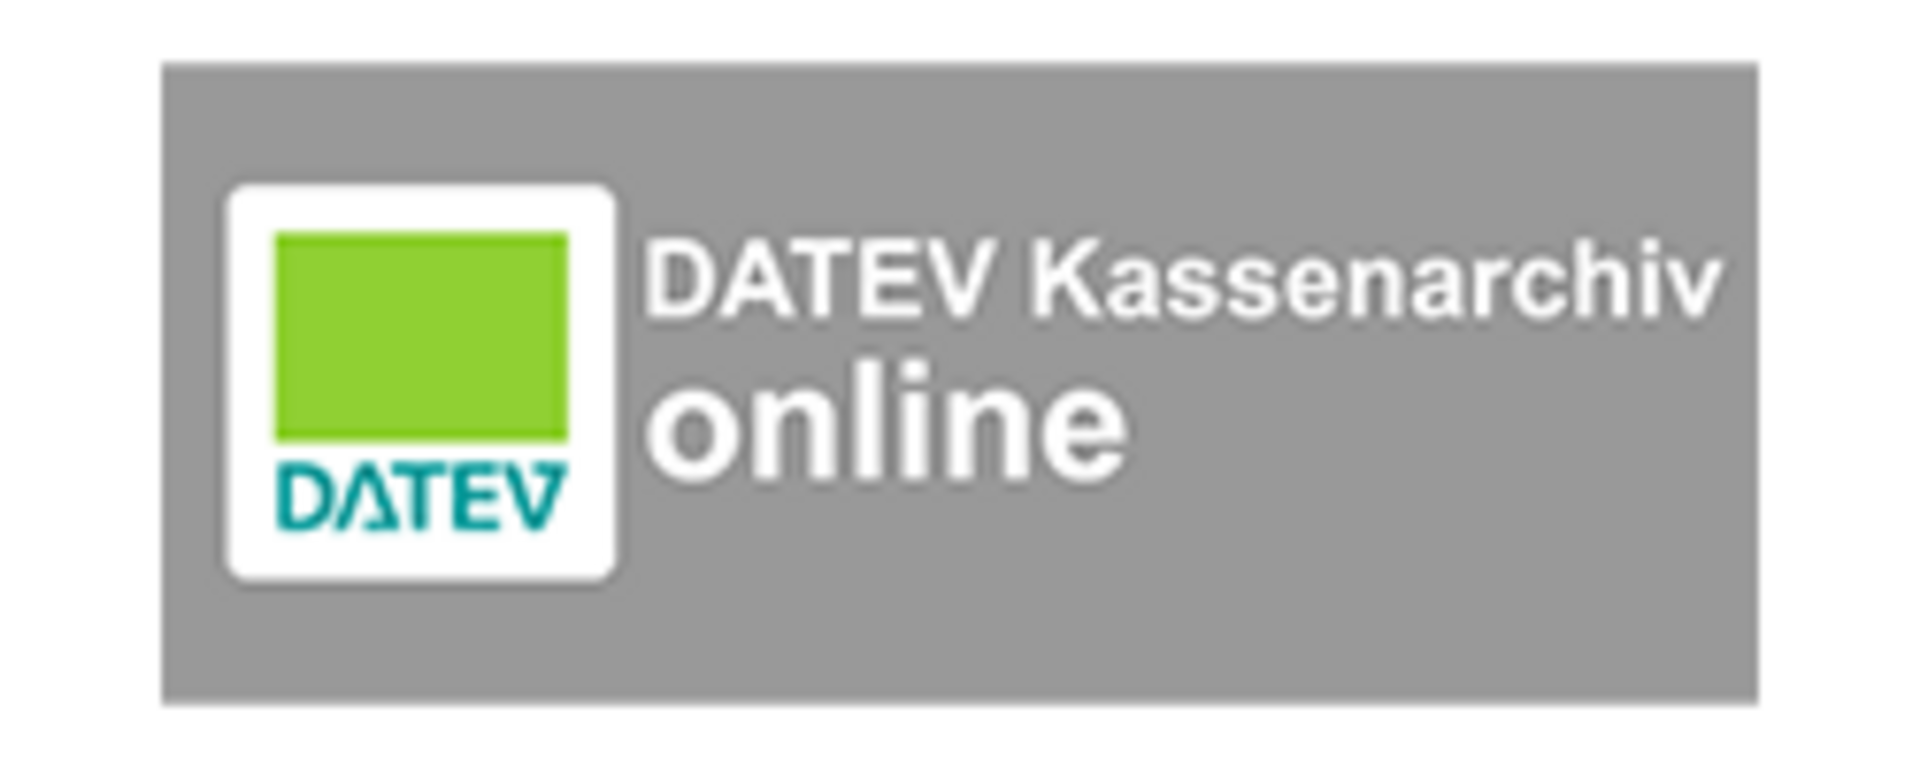 DATEV Kassenarchiv online